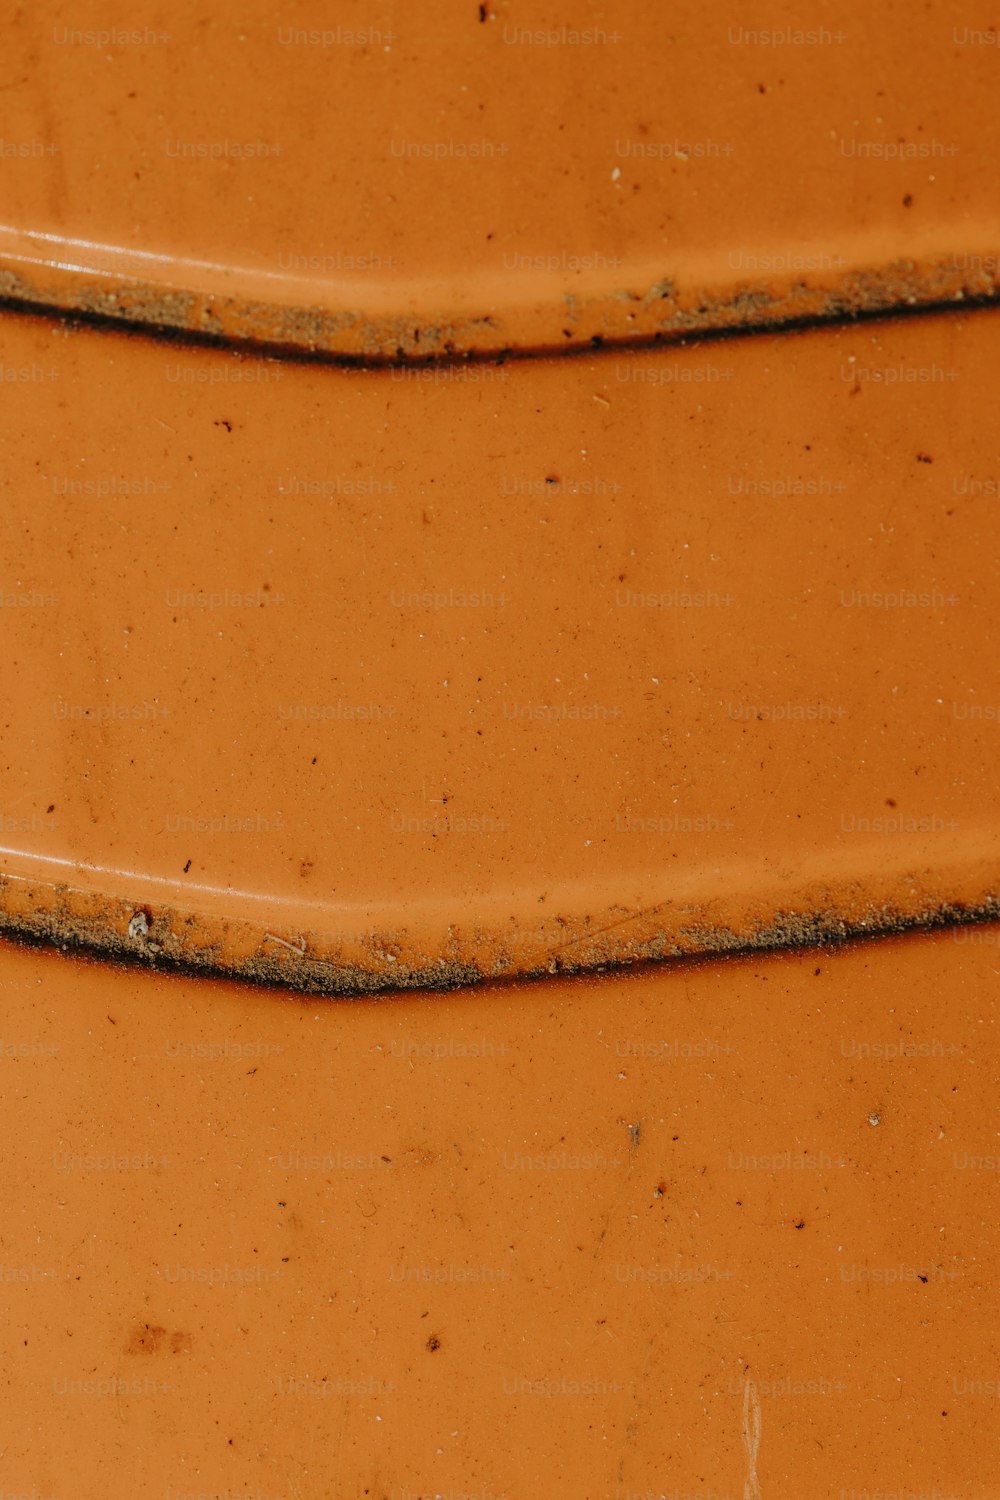 a close up of a large orange vase